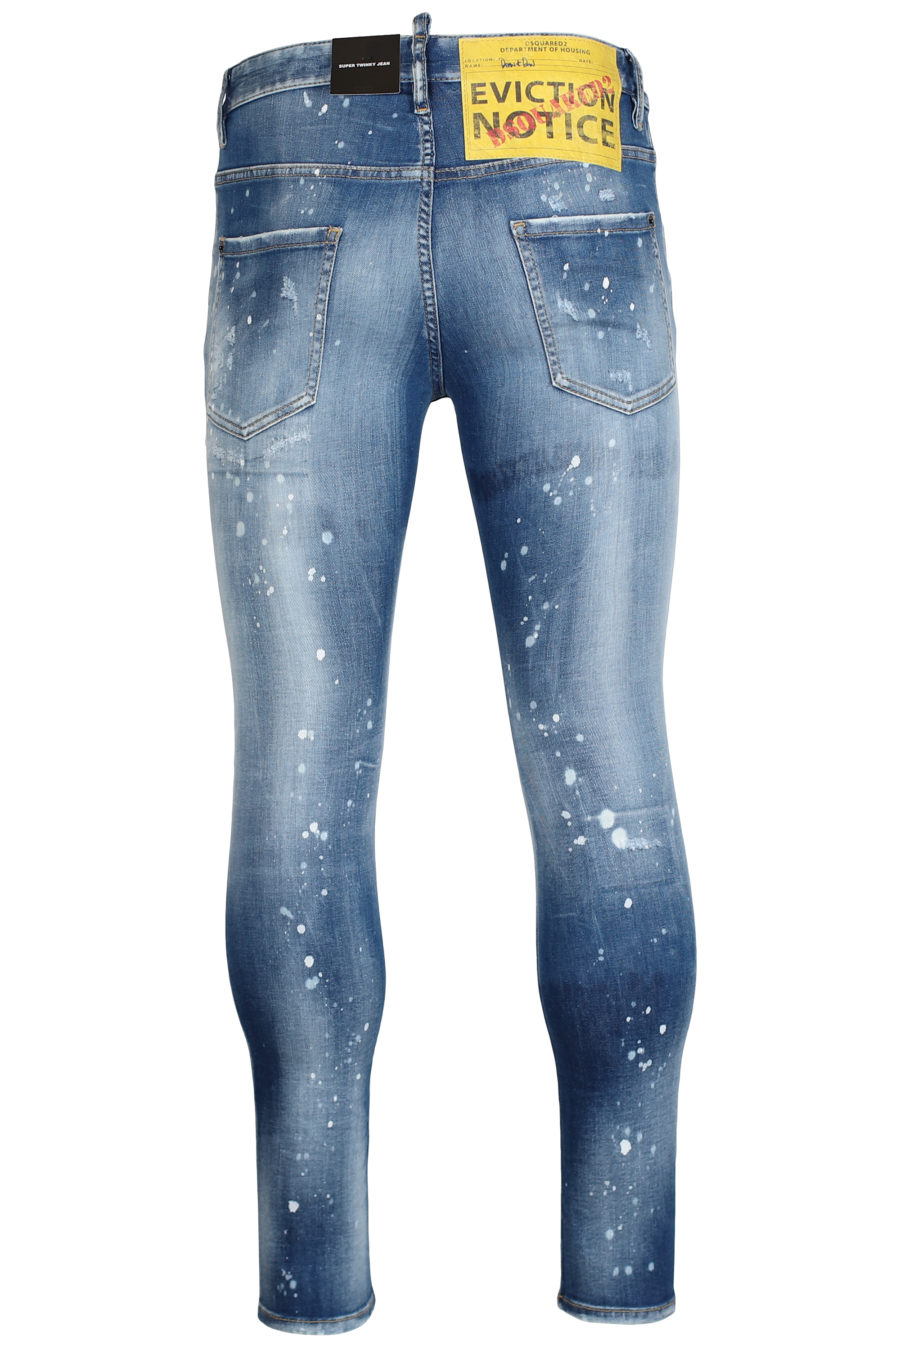 Blue jeans "Skater jean" - IMG 2444 1